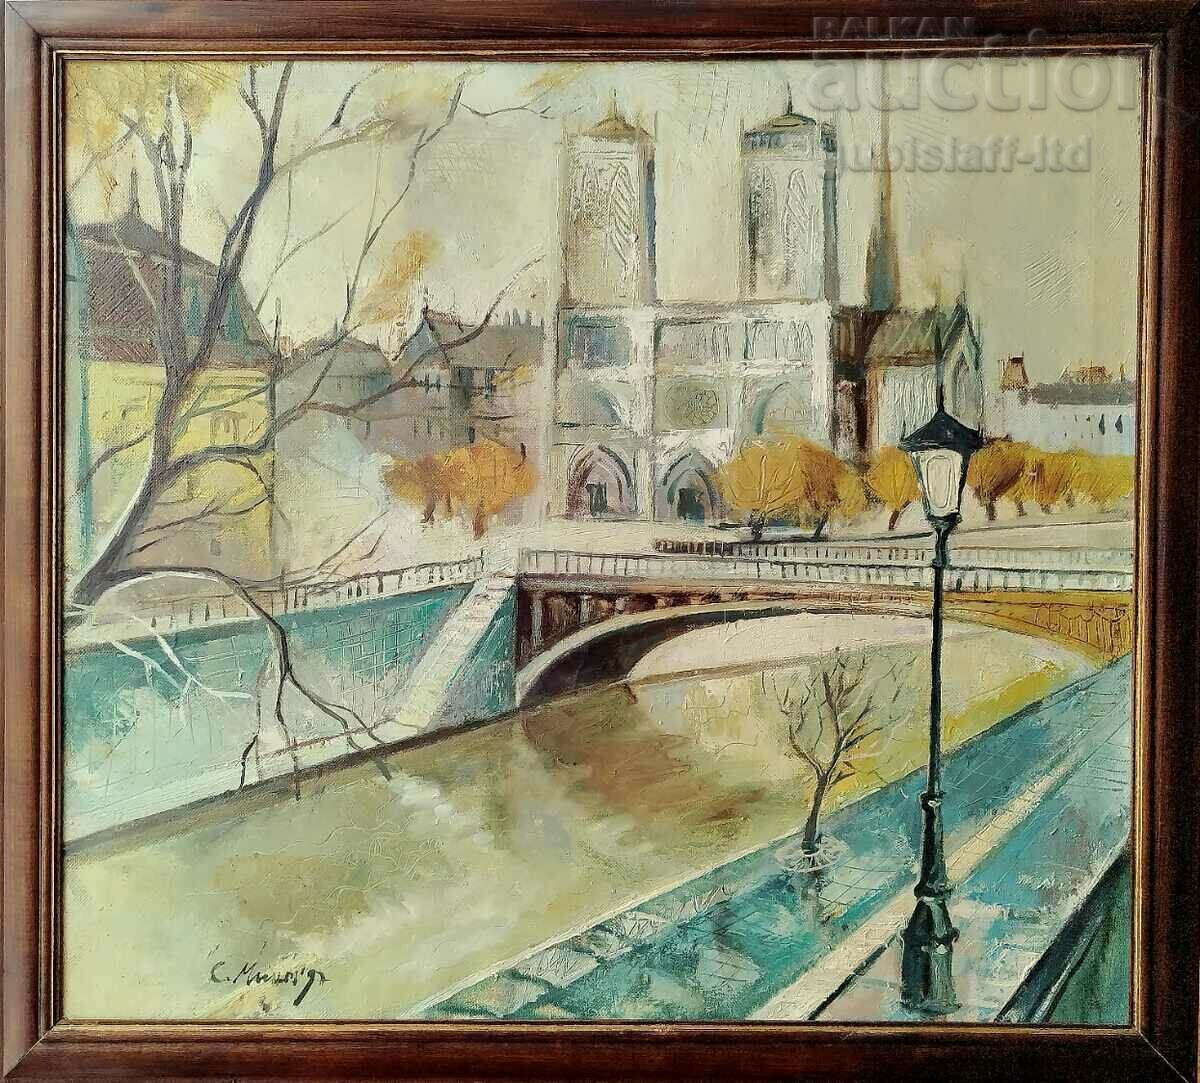 Picture "Paris with Notre Dame", art. S. Min.., 1997